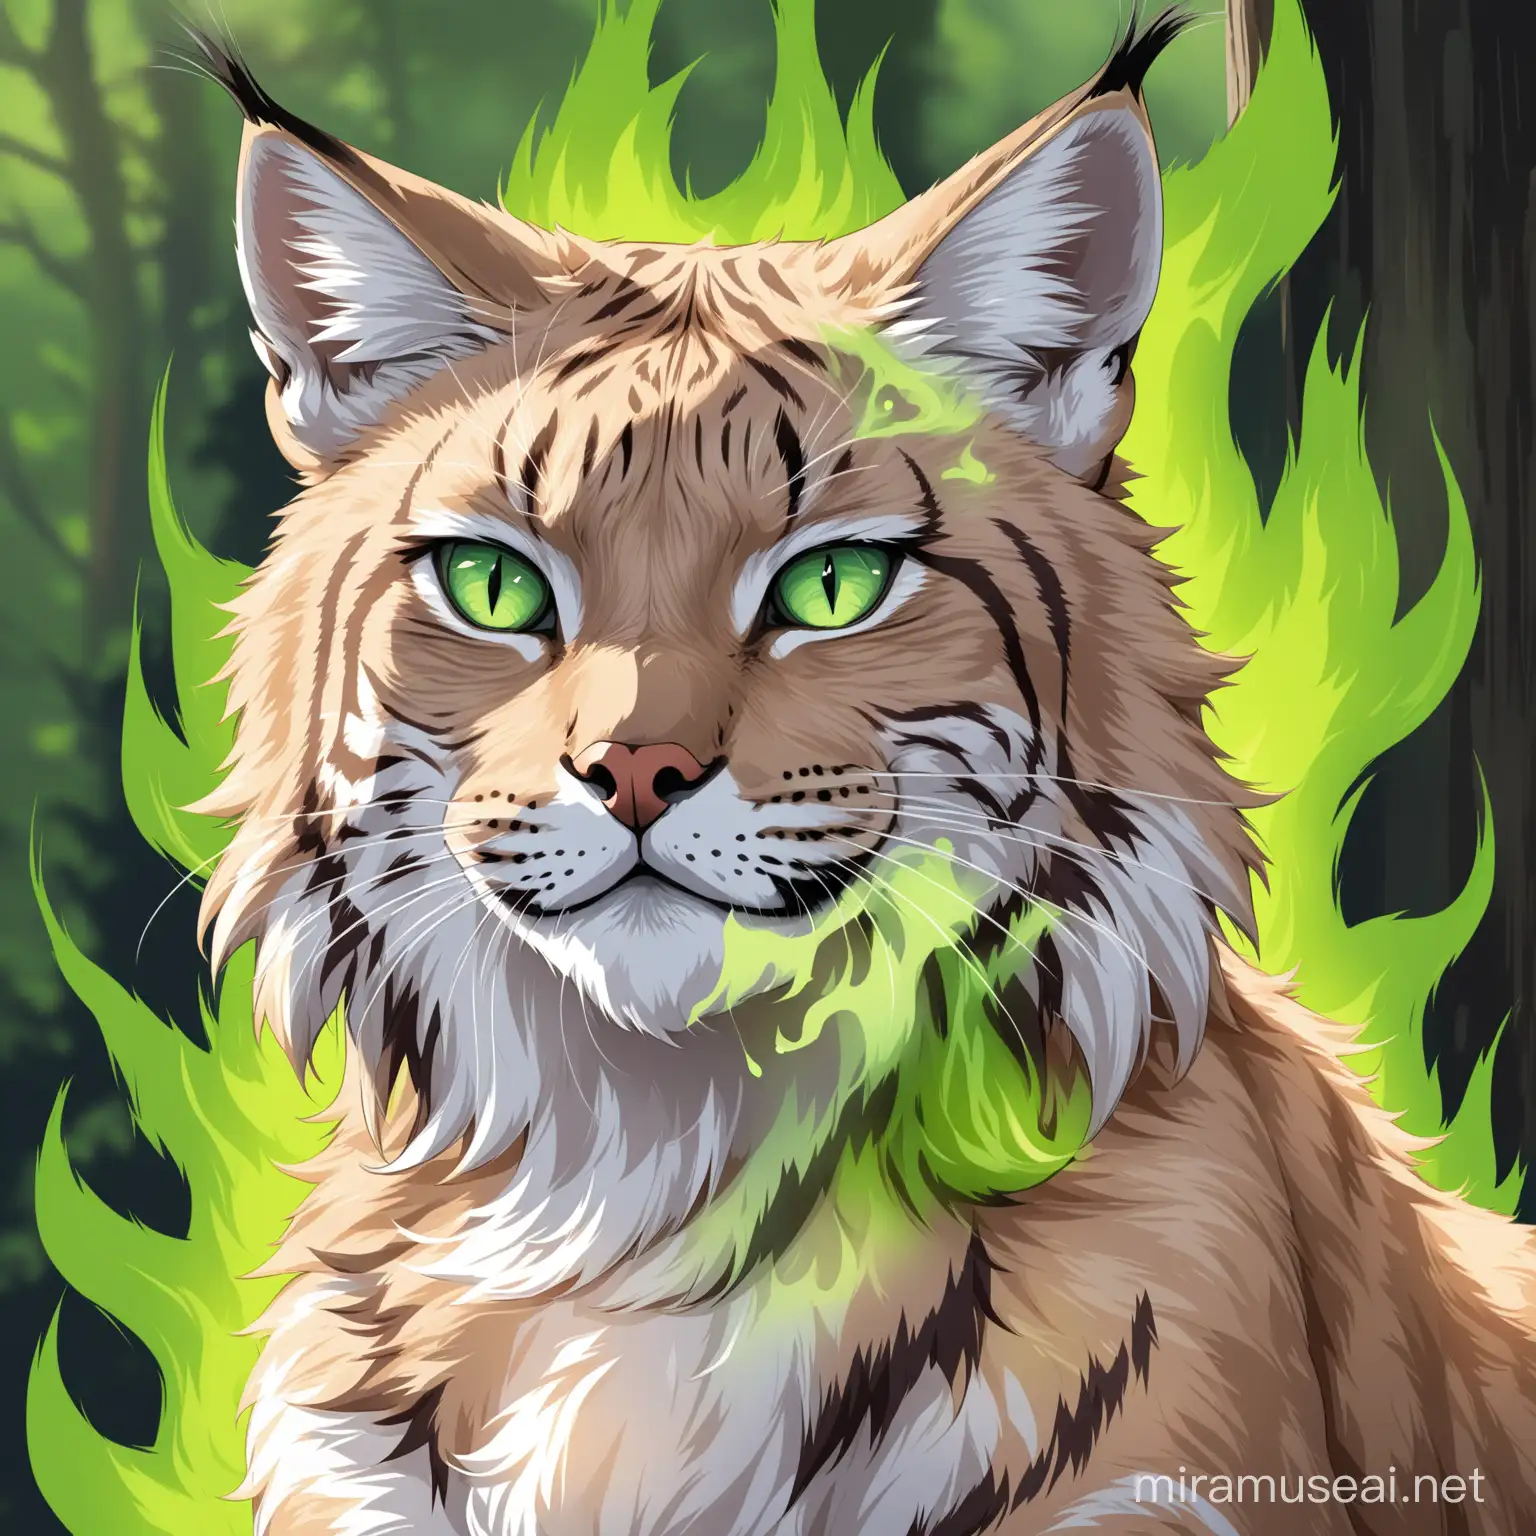 Has un lince (gato montes) que parezca que tiene fuego verde saliendo en sus ojos que luzca imponente 